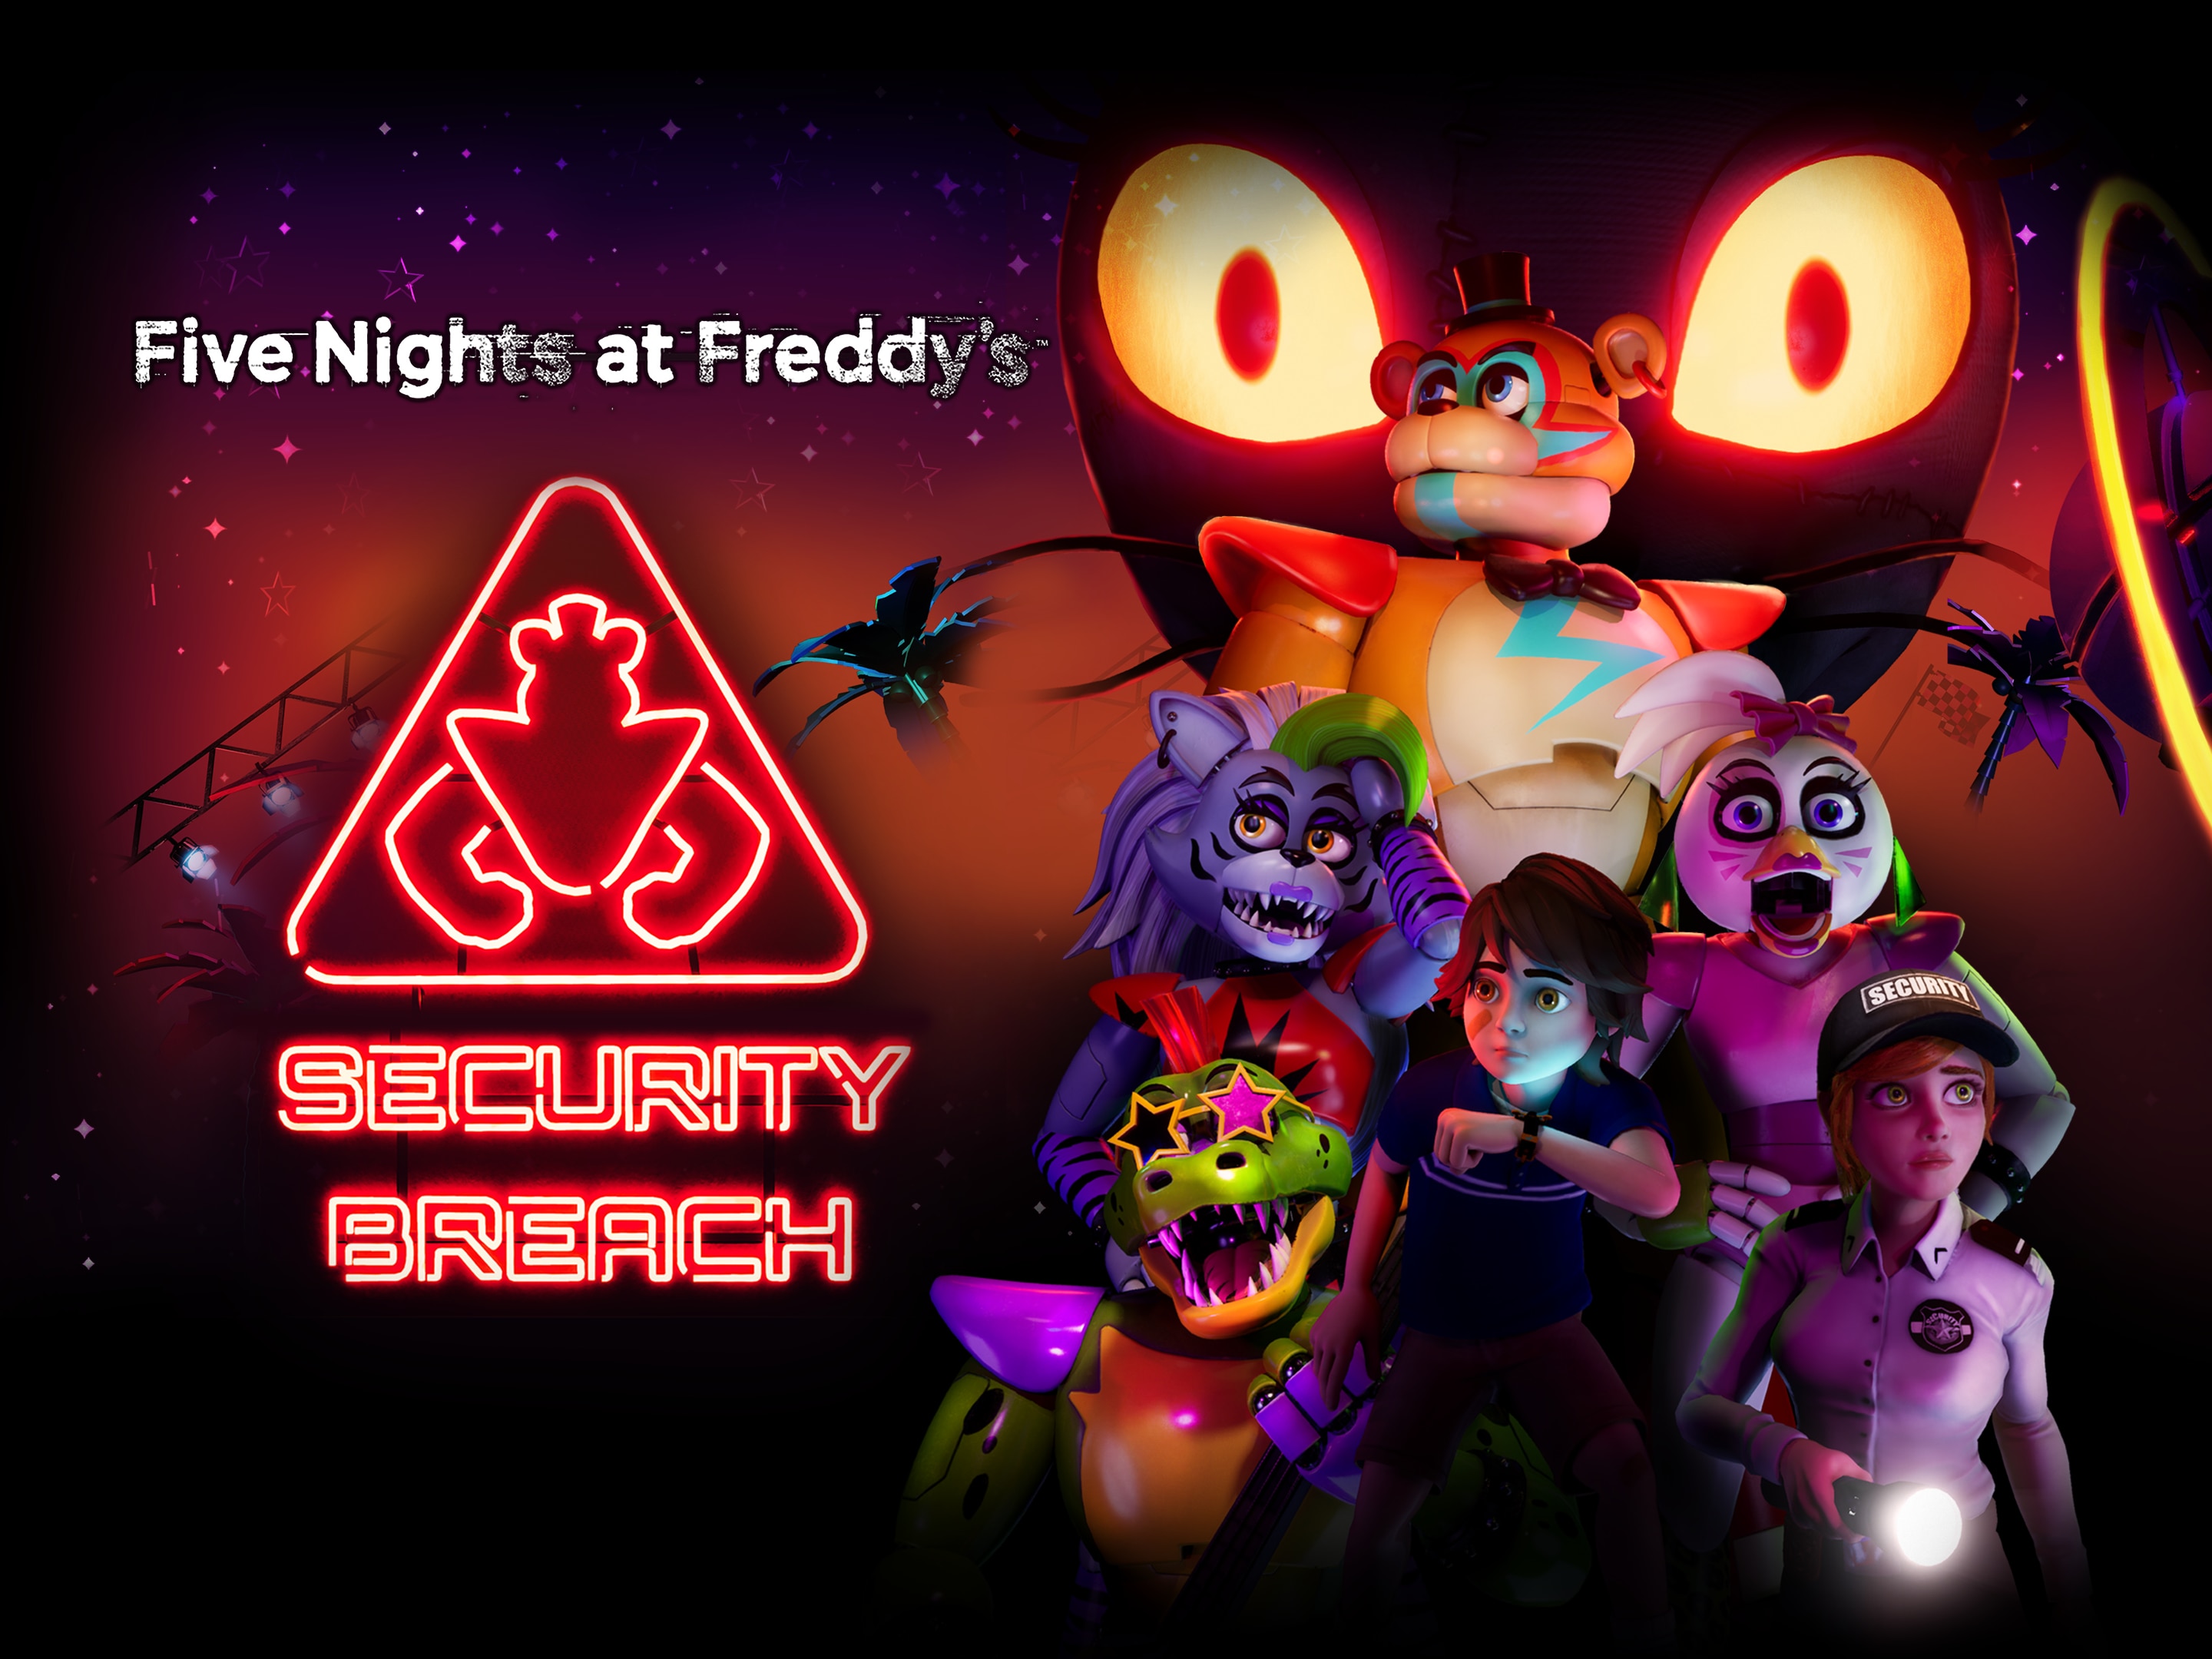 电 子 游 戏 Five Nights at Freddy's: Security Breach 高 清 壁 纸 桌 面 背 景.